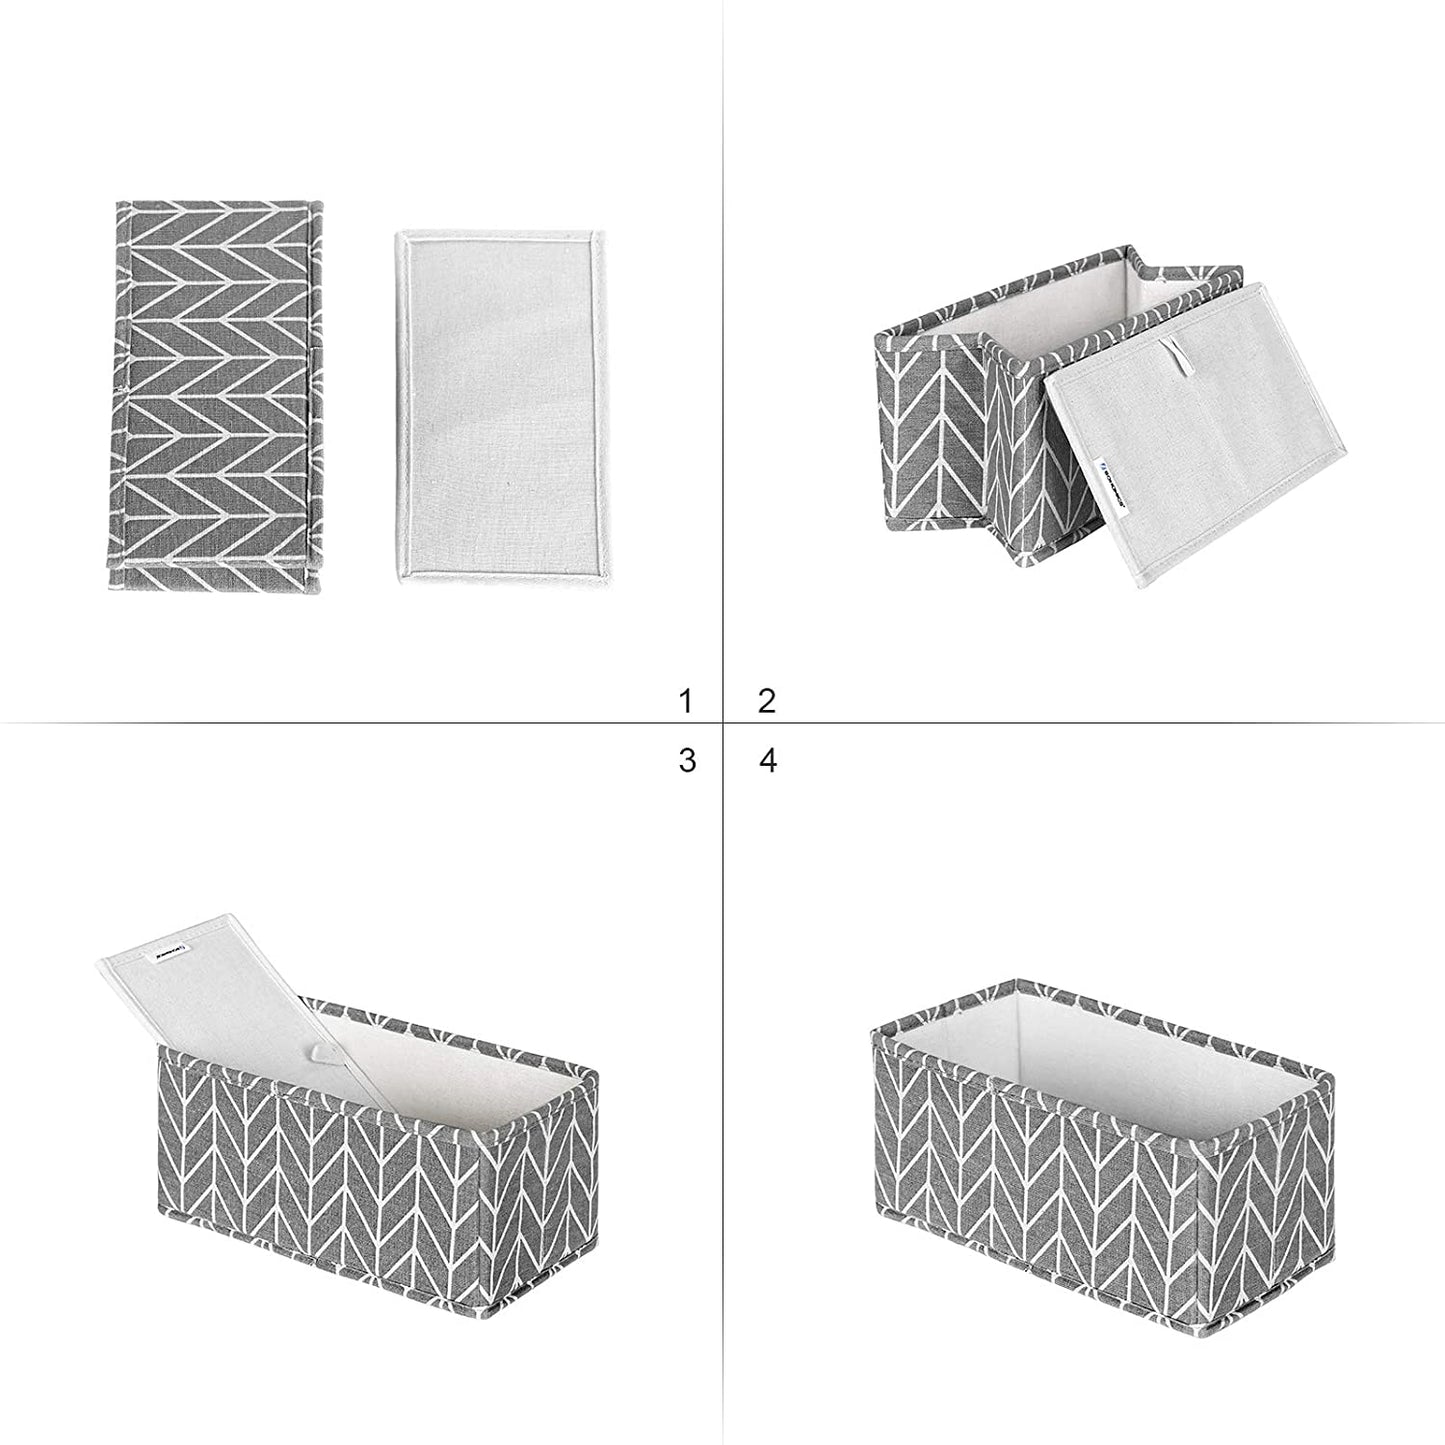 Boîtes de rangement Nancy's Baraboo - 6 boîtes de rangement - Pliables - Organisateurs - Boîtes à vêtements - Durable - Gris - 3 tailles - Coton - Tissu